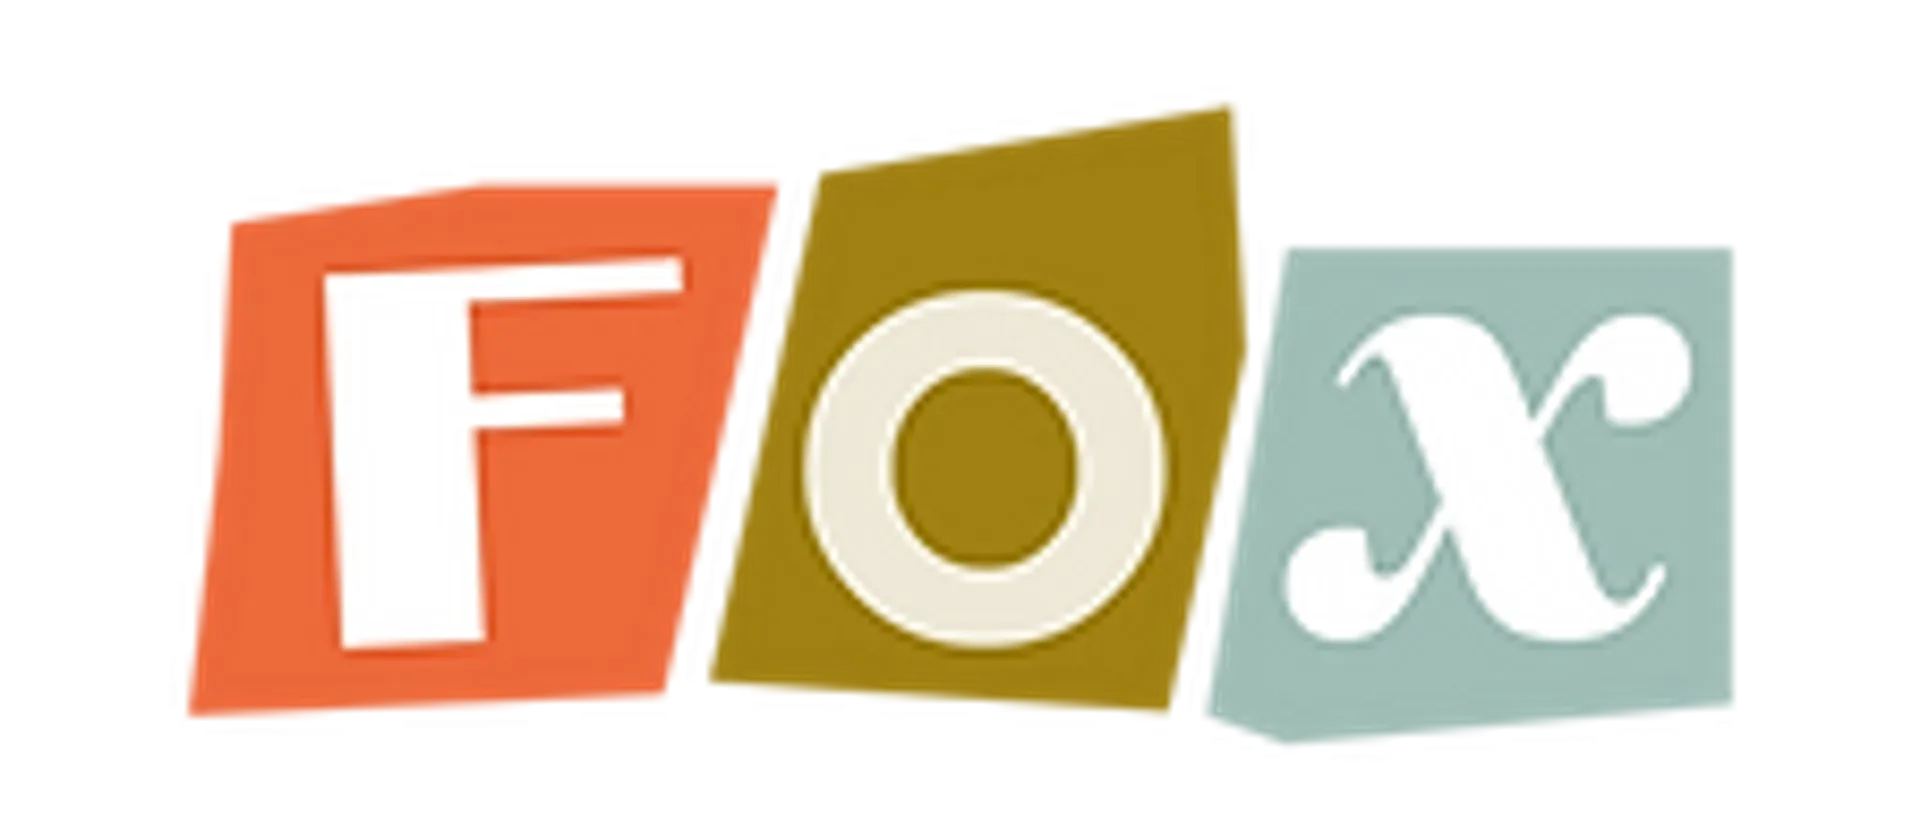 FOX logo in de folder van deze week